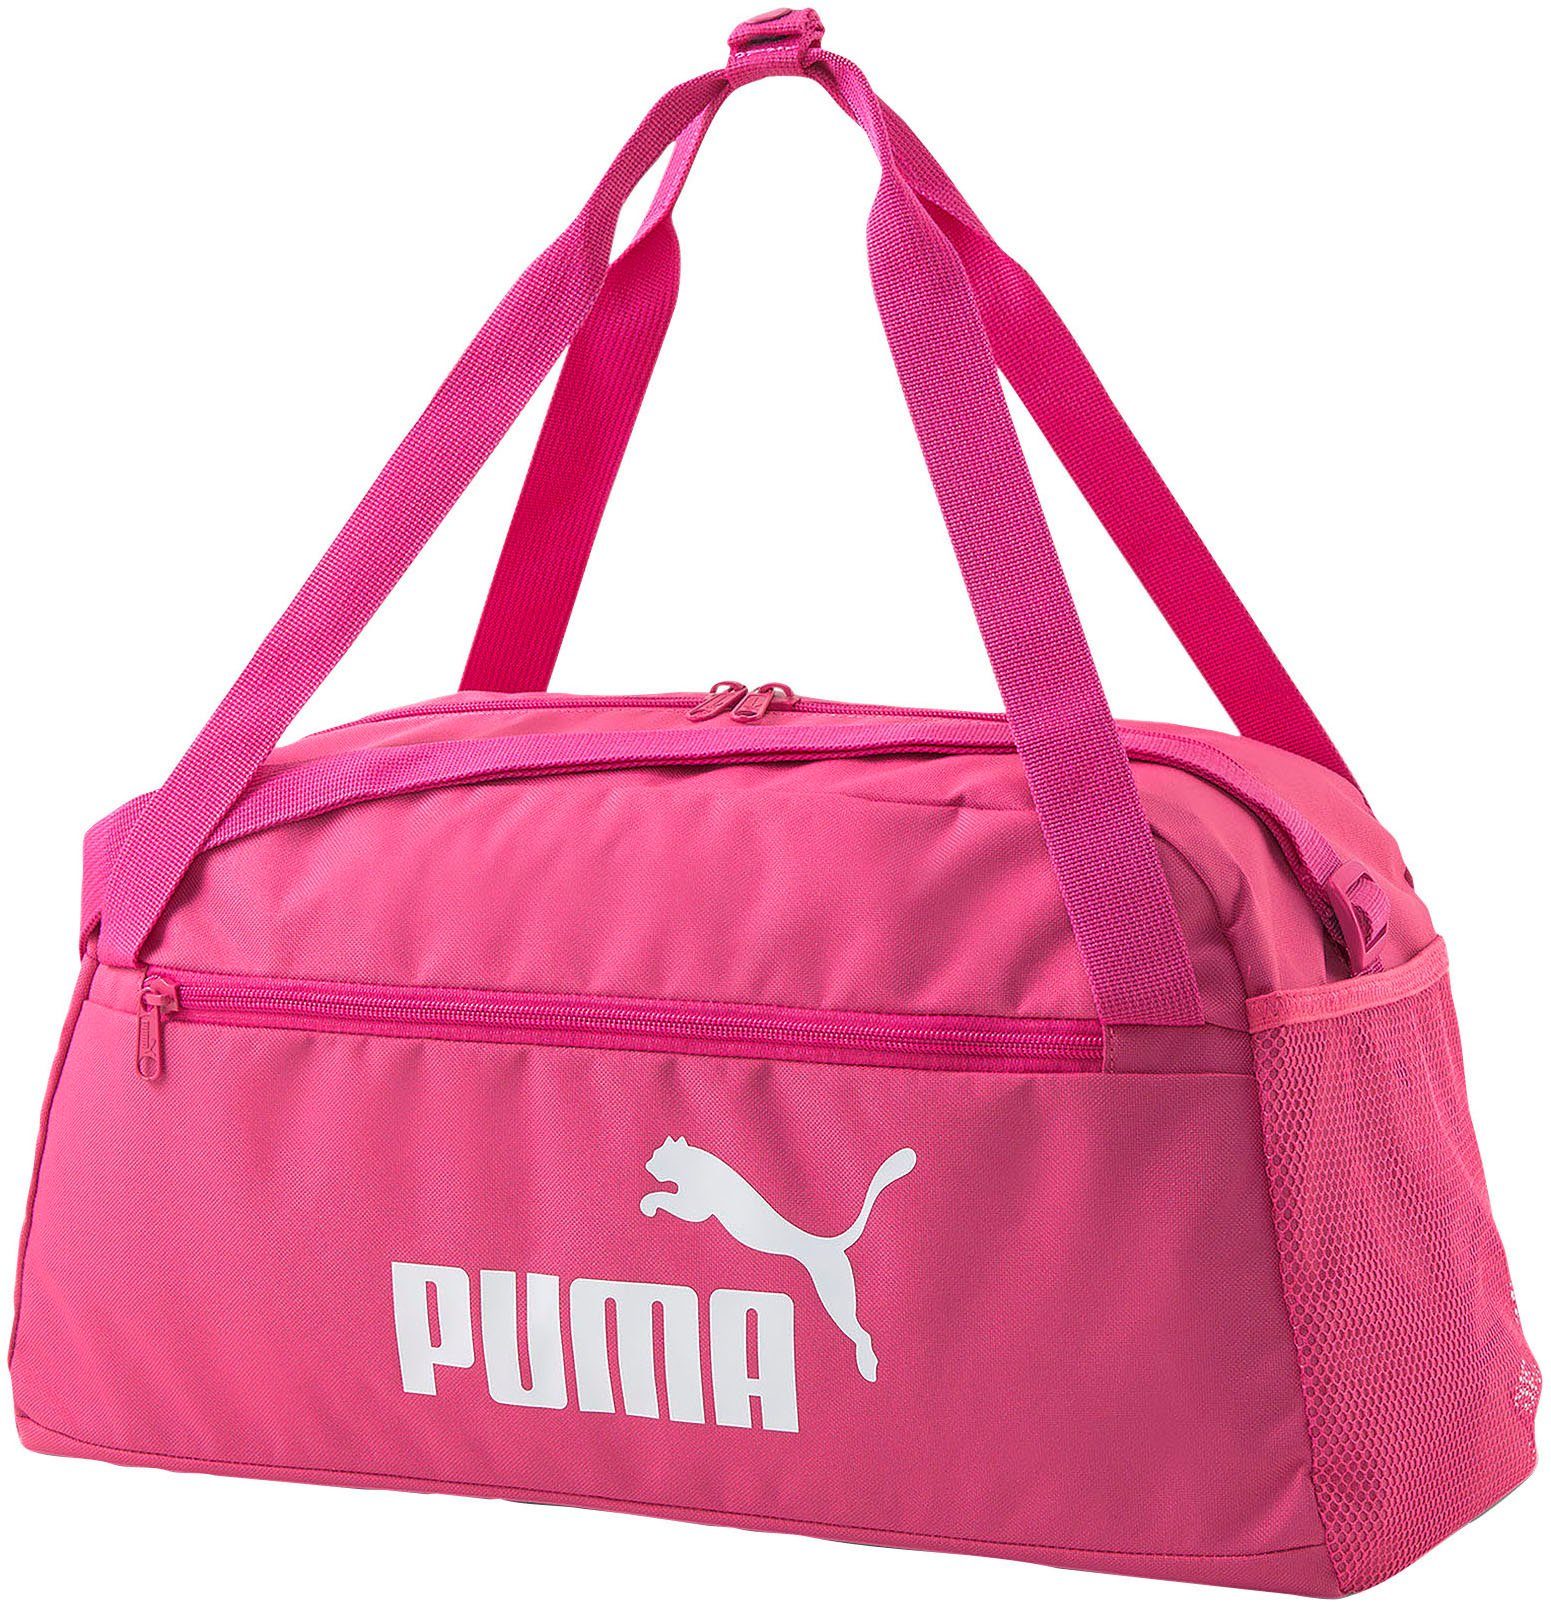 PUMA Sporttasche »PUMA Phase Sports Bag« online kaufen | OTTO